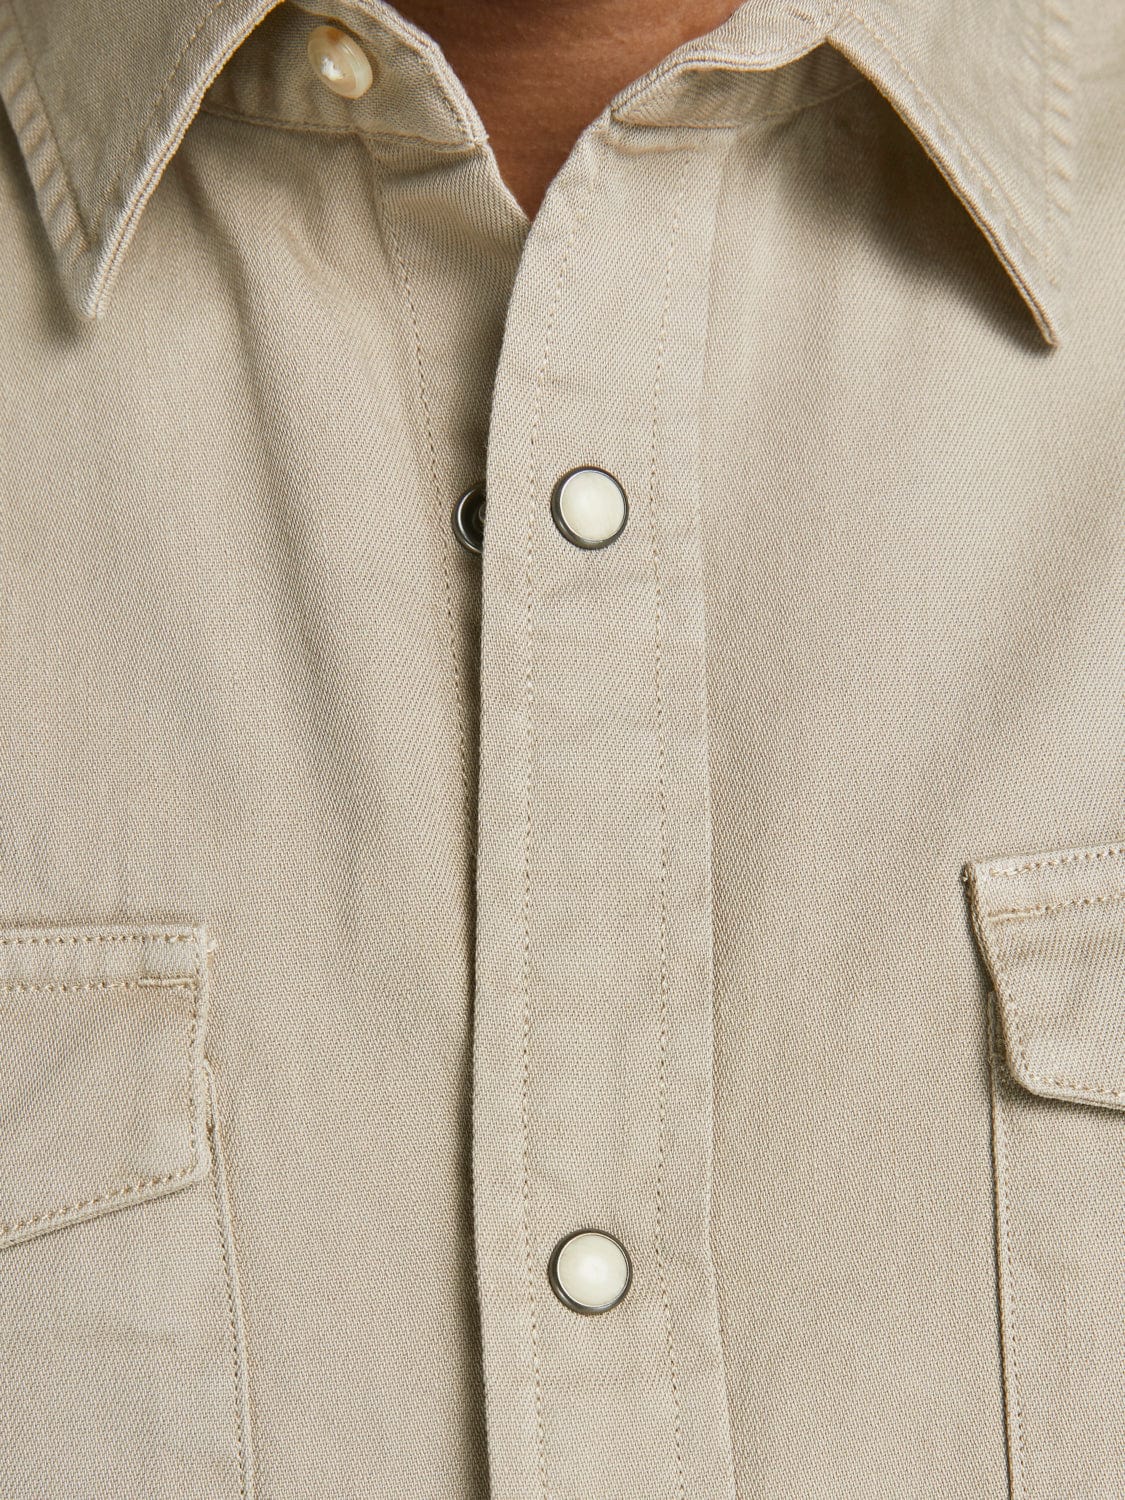 Camisa vaquera beige con bolsillos -SHERIDAN